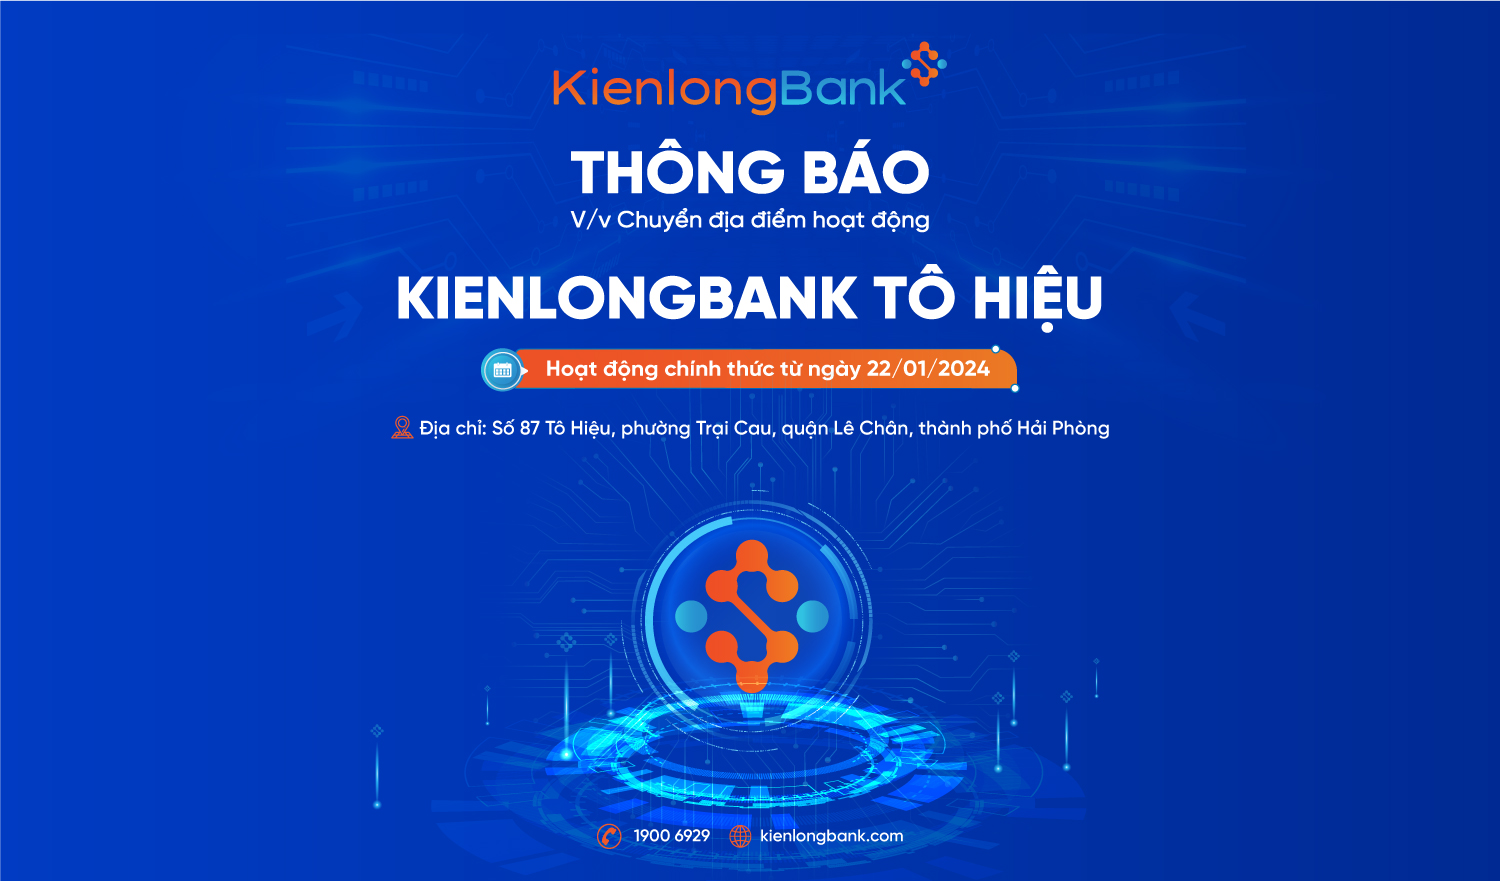 Thông báo v/v chuyển địa điểm hoạt động và thay đổi tên KienlongBank Ngô Quyền thành KienlongBank Tô Hiệu